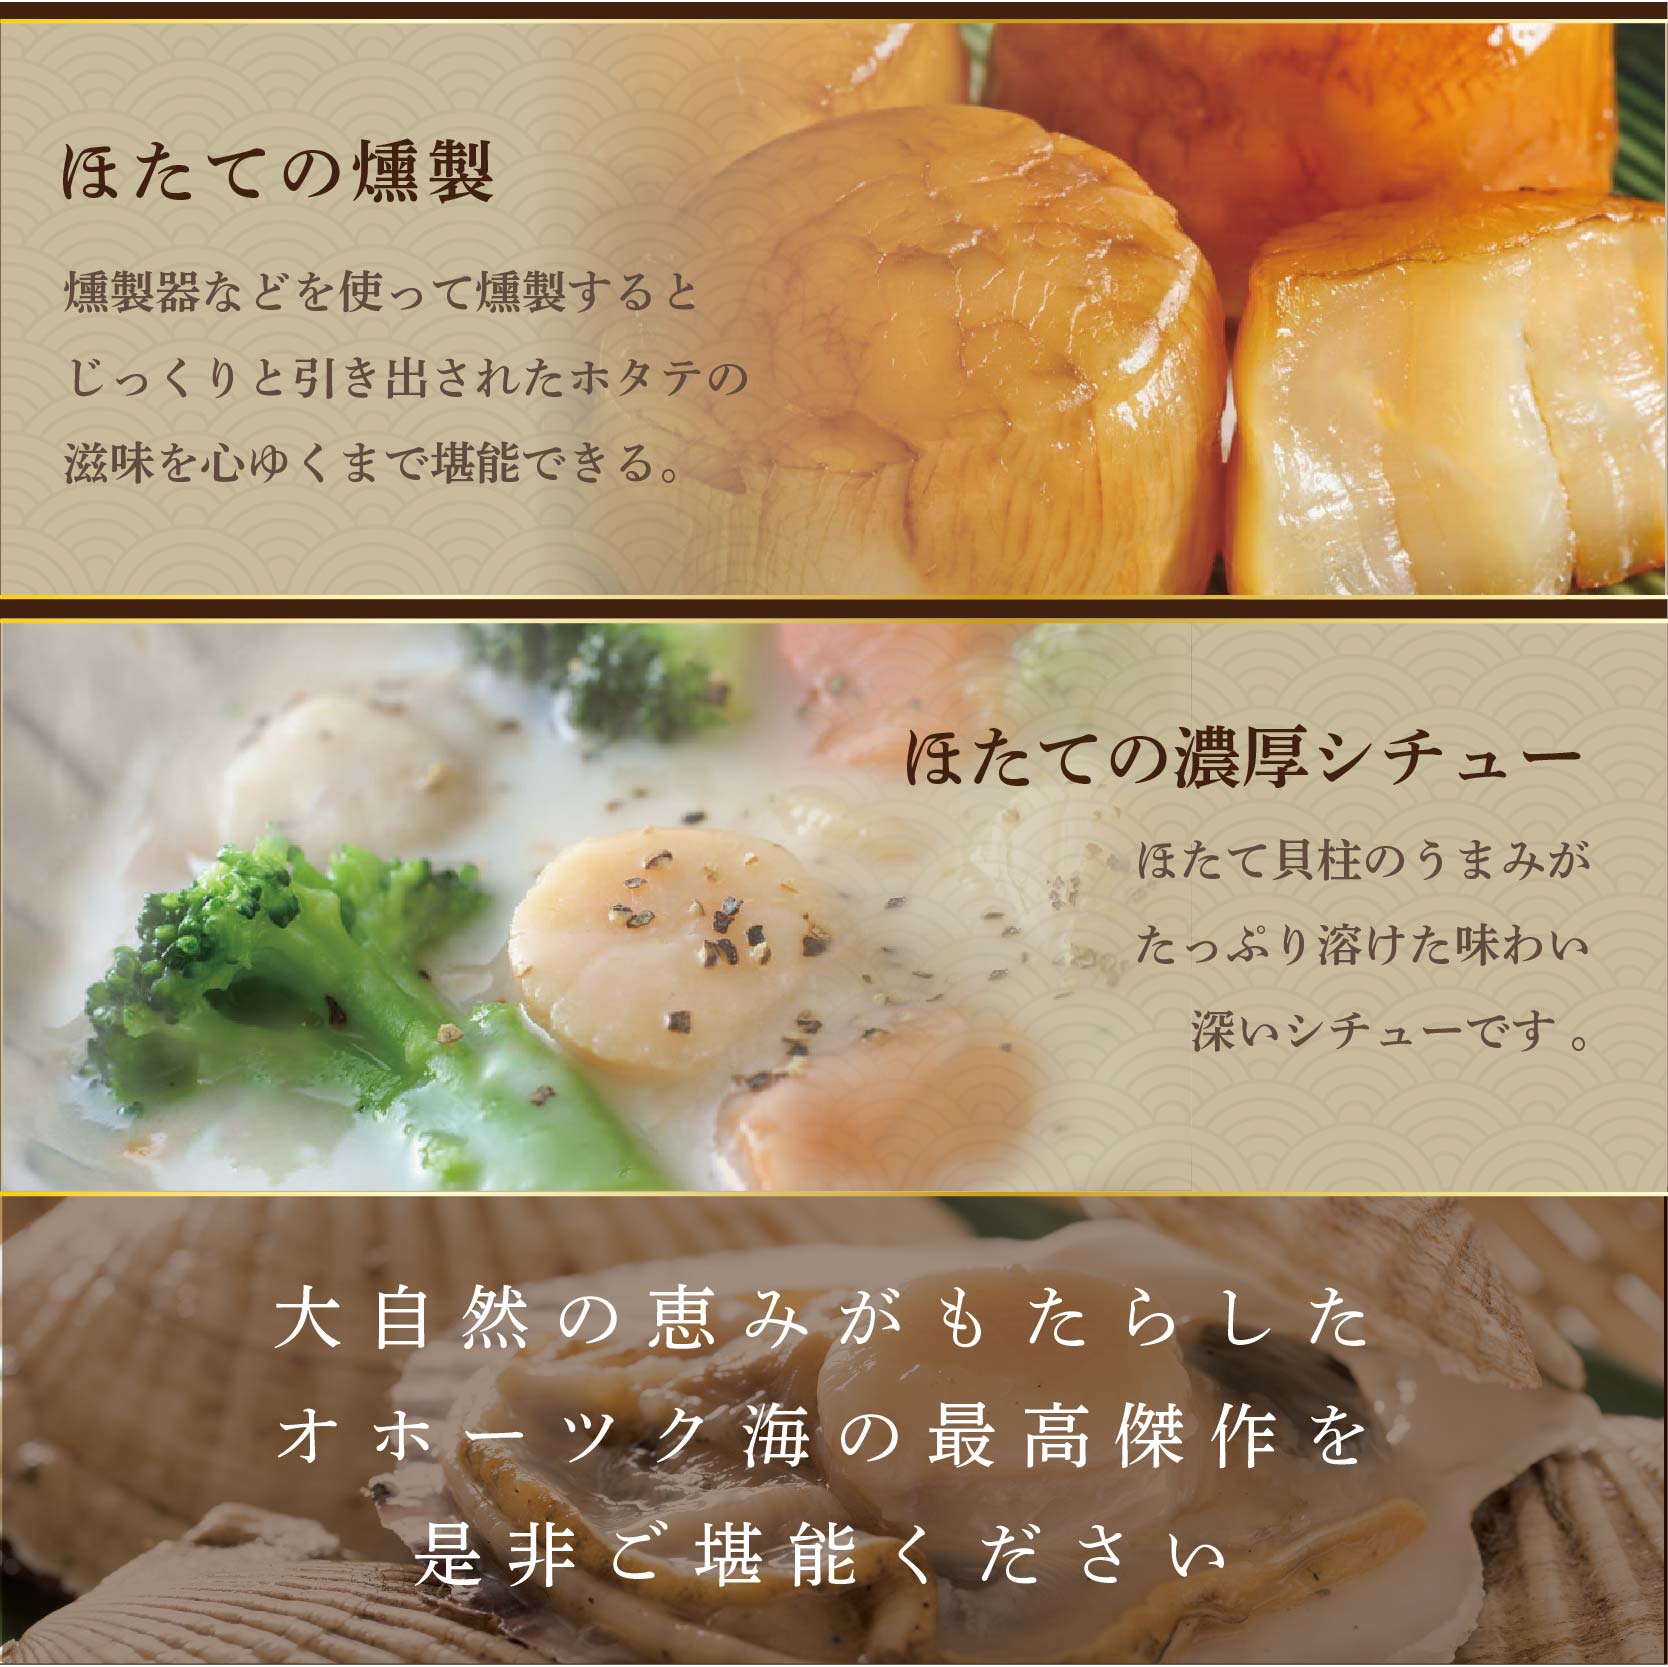 【毎月9ヶ月定期便】北海道 野付産 漁協直送 冷凍ホタテ 貝柱大粒ホタテ1ｋｇ